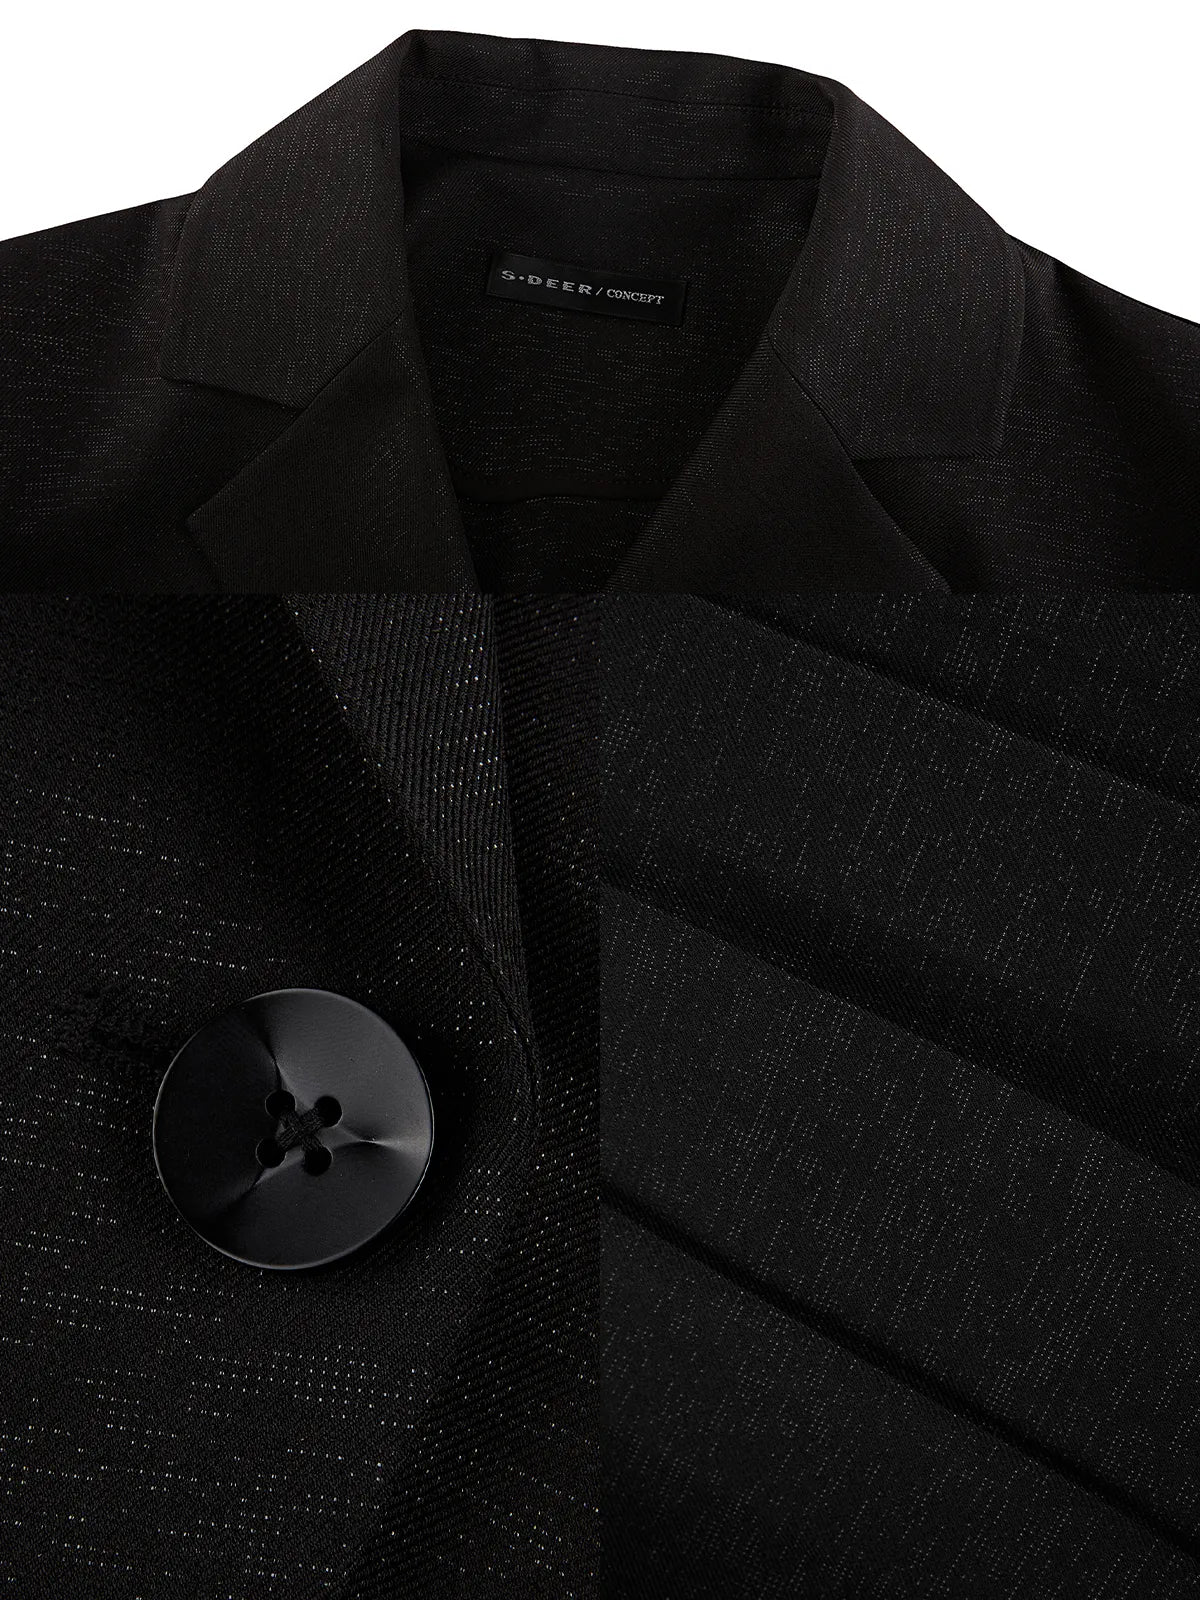 Blazer-Kragen-Plissee-Kurzrock-Anzug